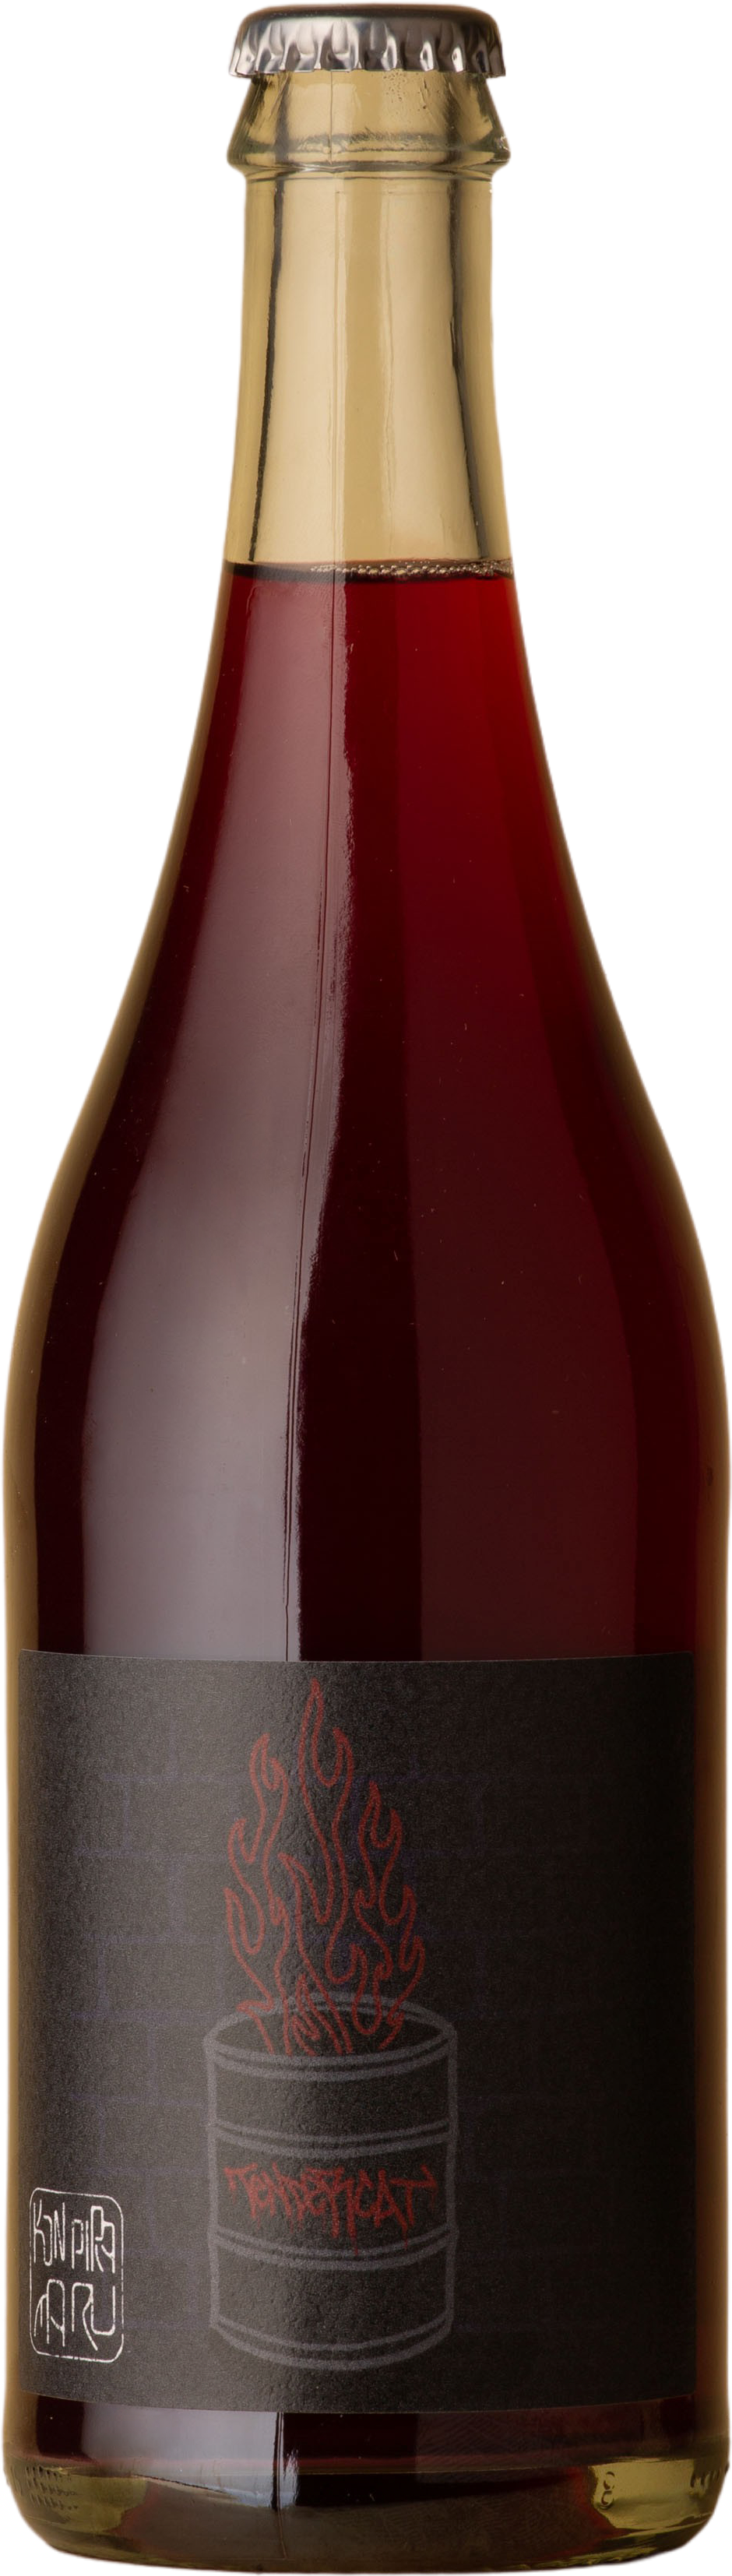 Konpira Maru - Tender Cat Red Blend 2020 Red Wine